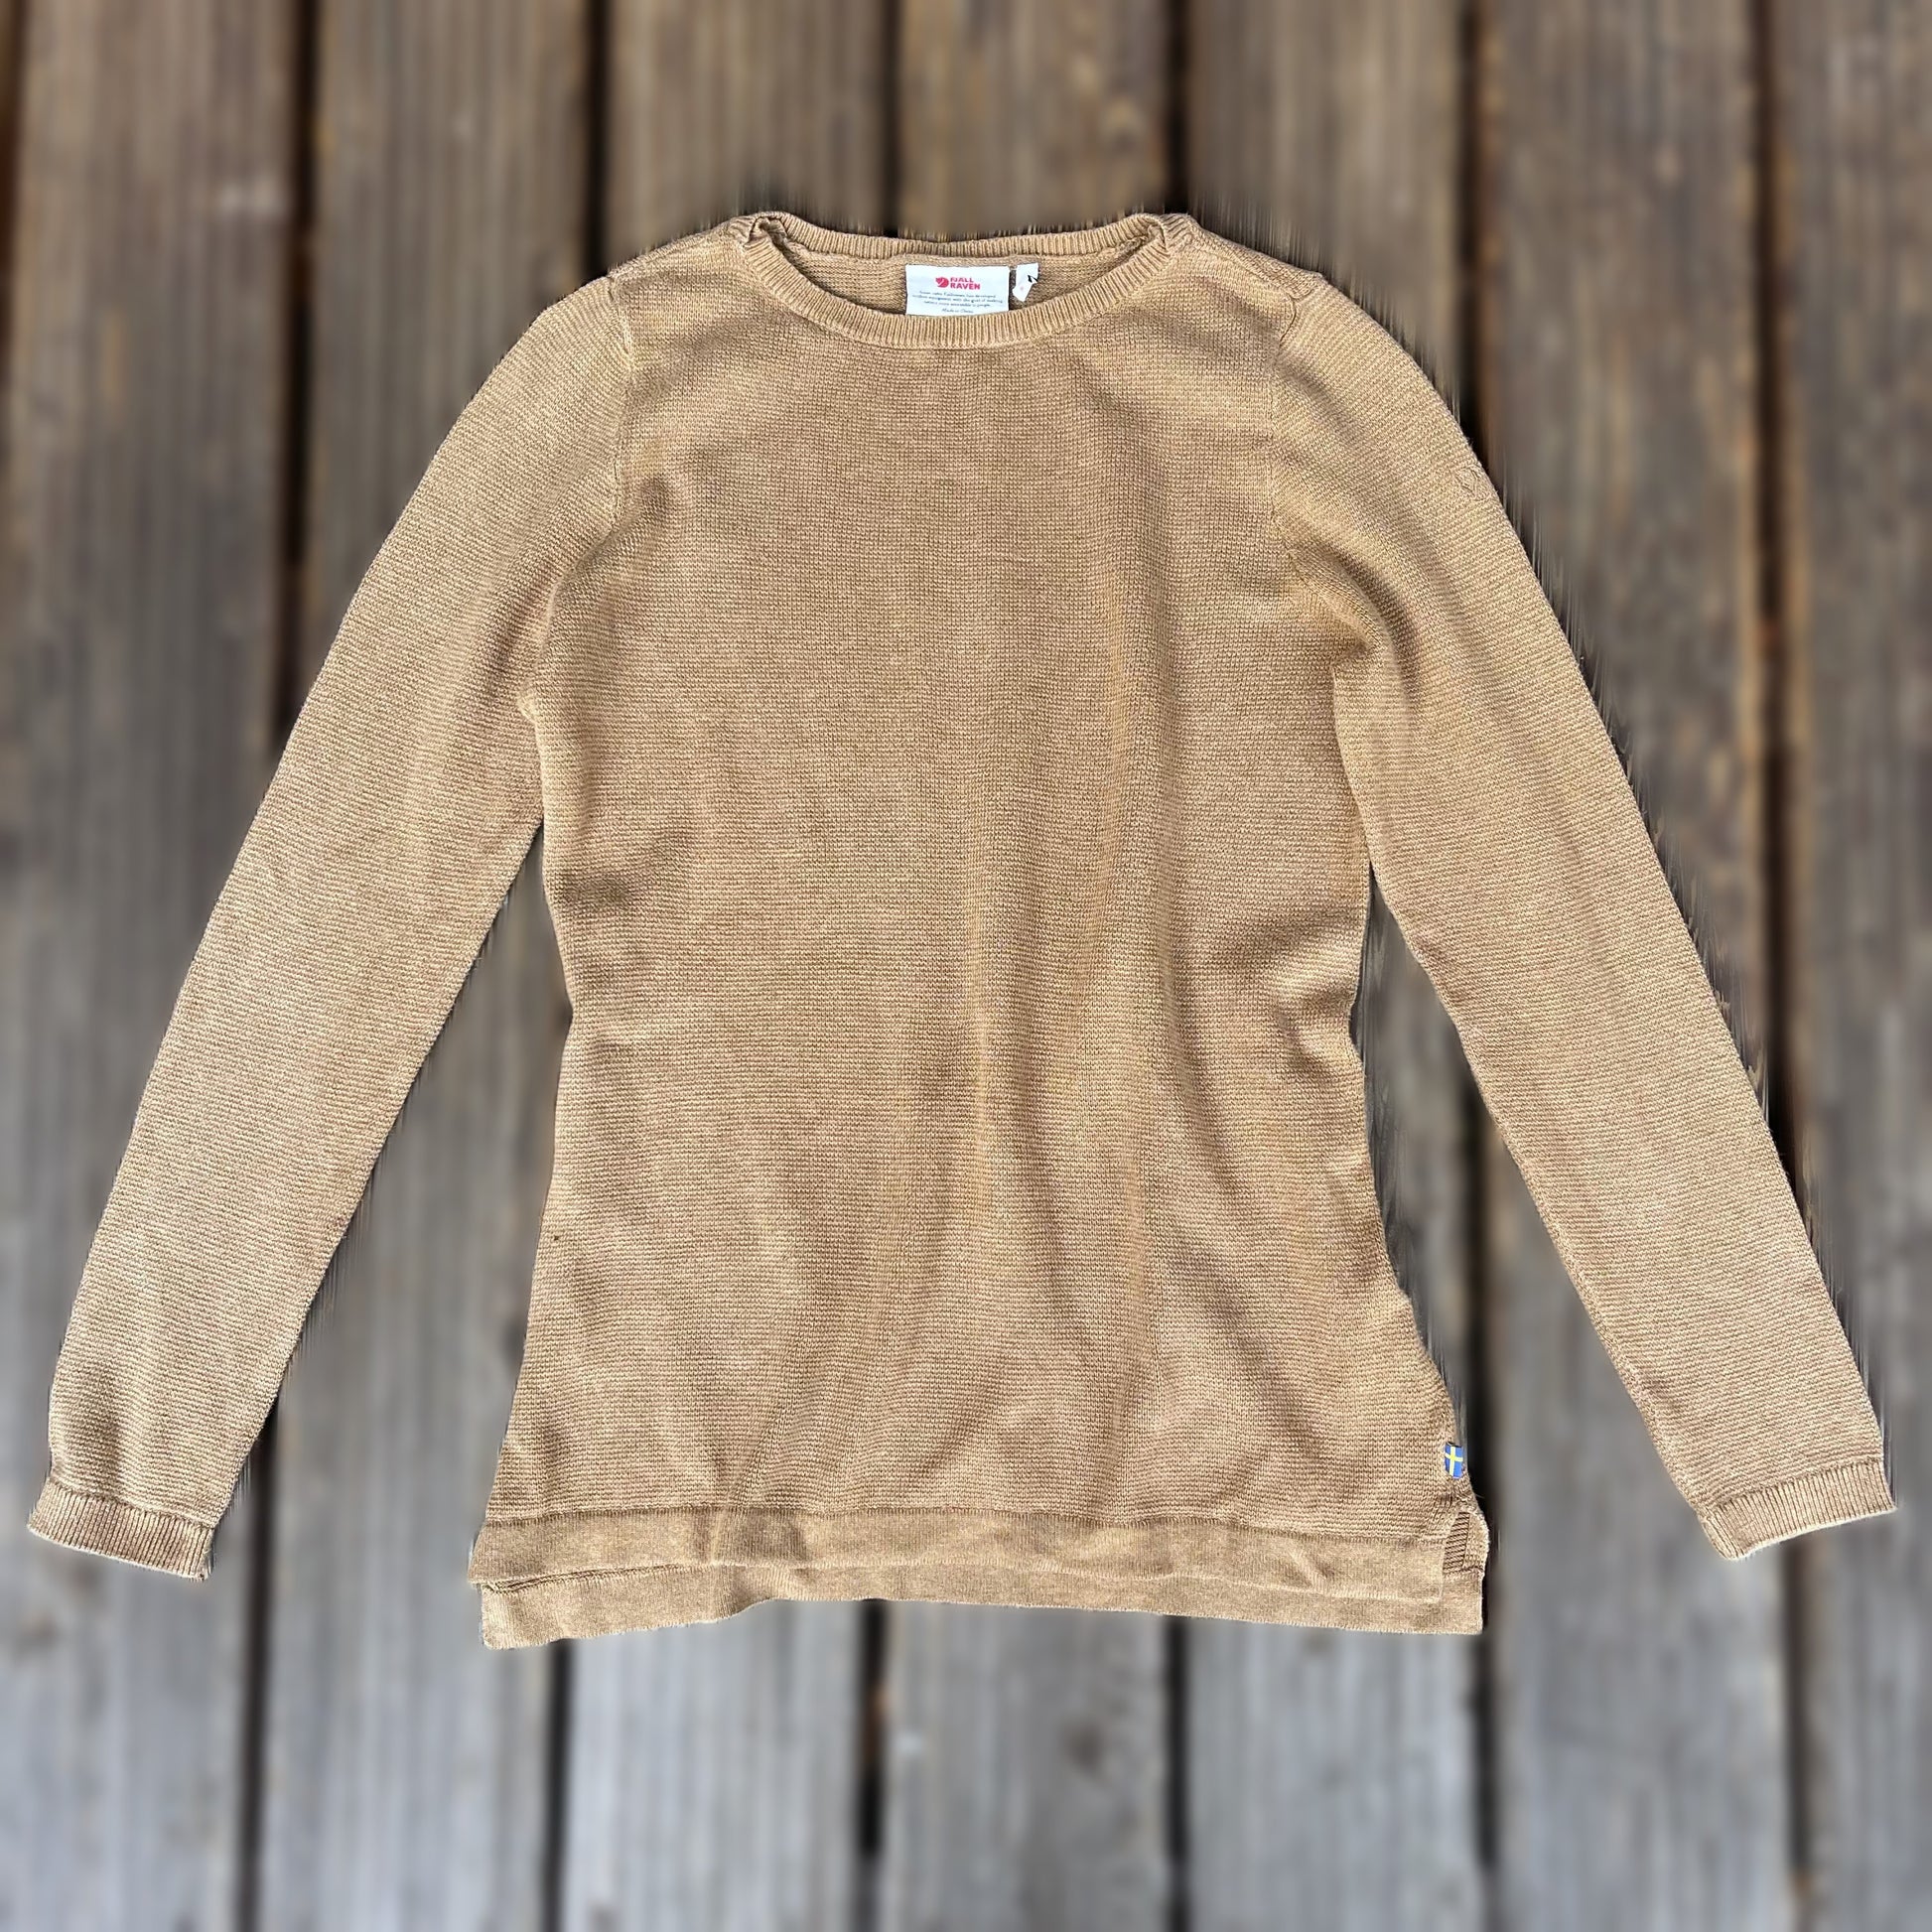 High Coast Knit Sweater / Pullover von Fjällräven in Größe S (Damen) hellbraun - wanderlich.com